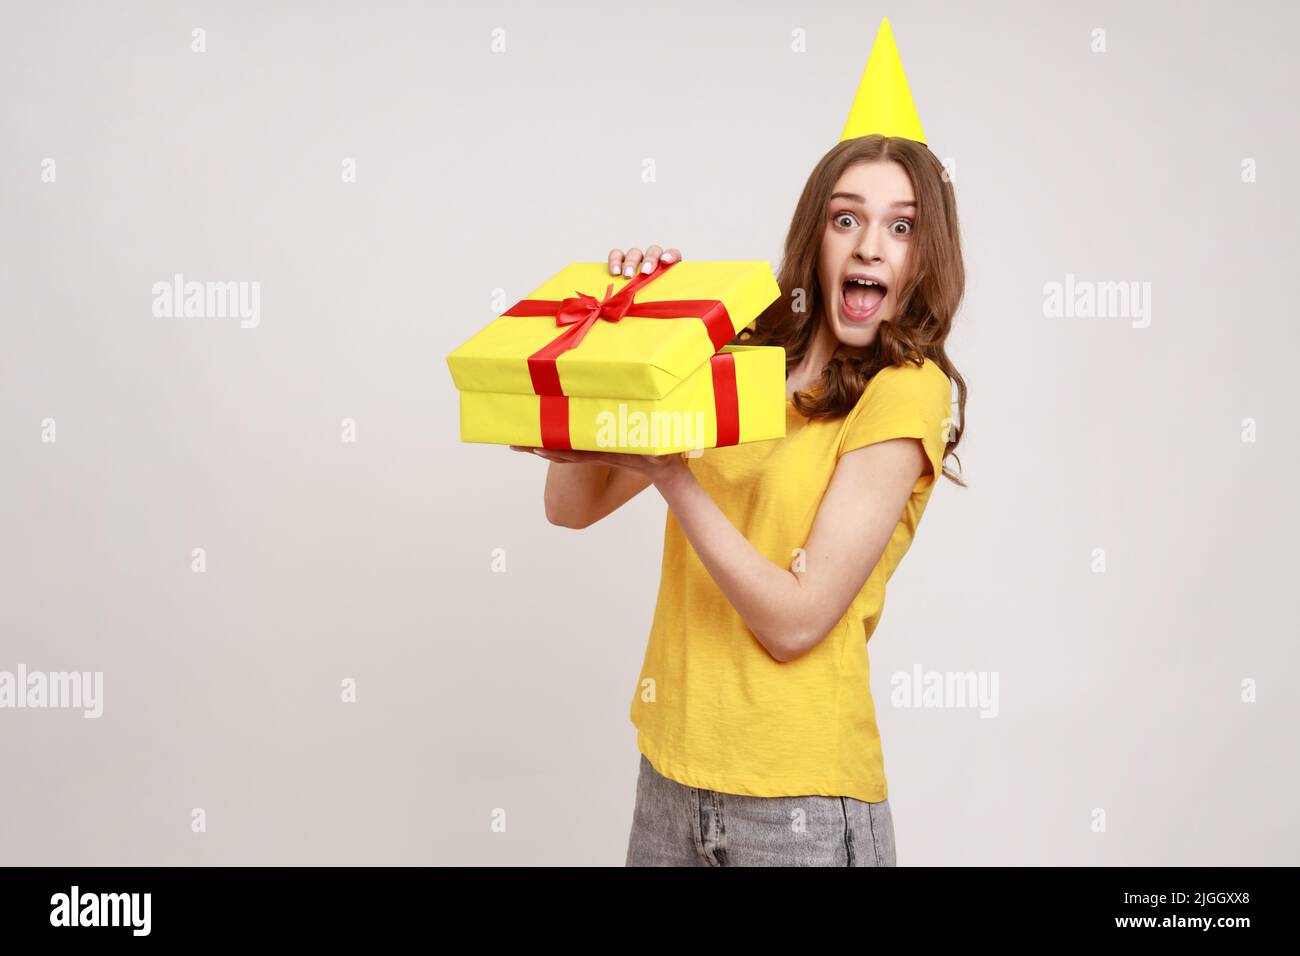 Porträt einer aufgeregten, verblüfften, braunhaarigen jungen Frau, die die Geschenkbox mit überraschter Ausstrahlung auspackte und das Geburtstagsgeschenk ausgepackt hatte. Innenaufnahme des Studios isoliert auf grauem Hintergrund. Stockfoto